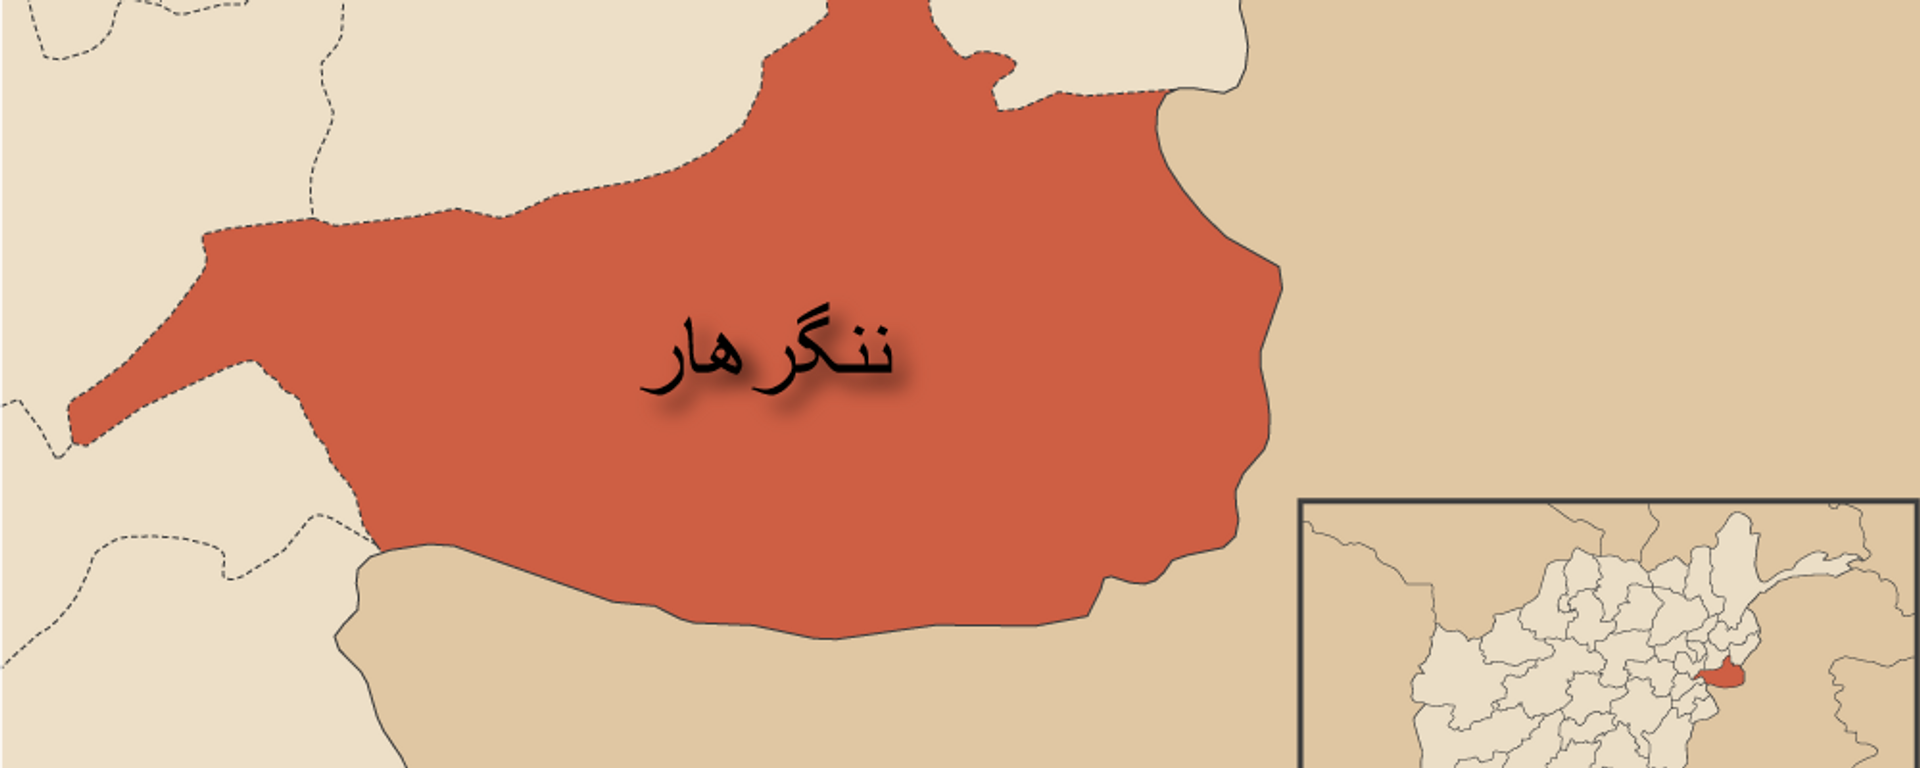 افراد مسلح ناشناس 7 کارگر را در ننگرهار به گلوله بستند - اسپوتنیک افغانستان  , 1920, 04.03.2021